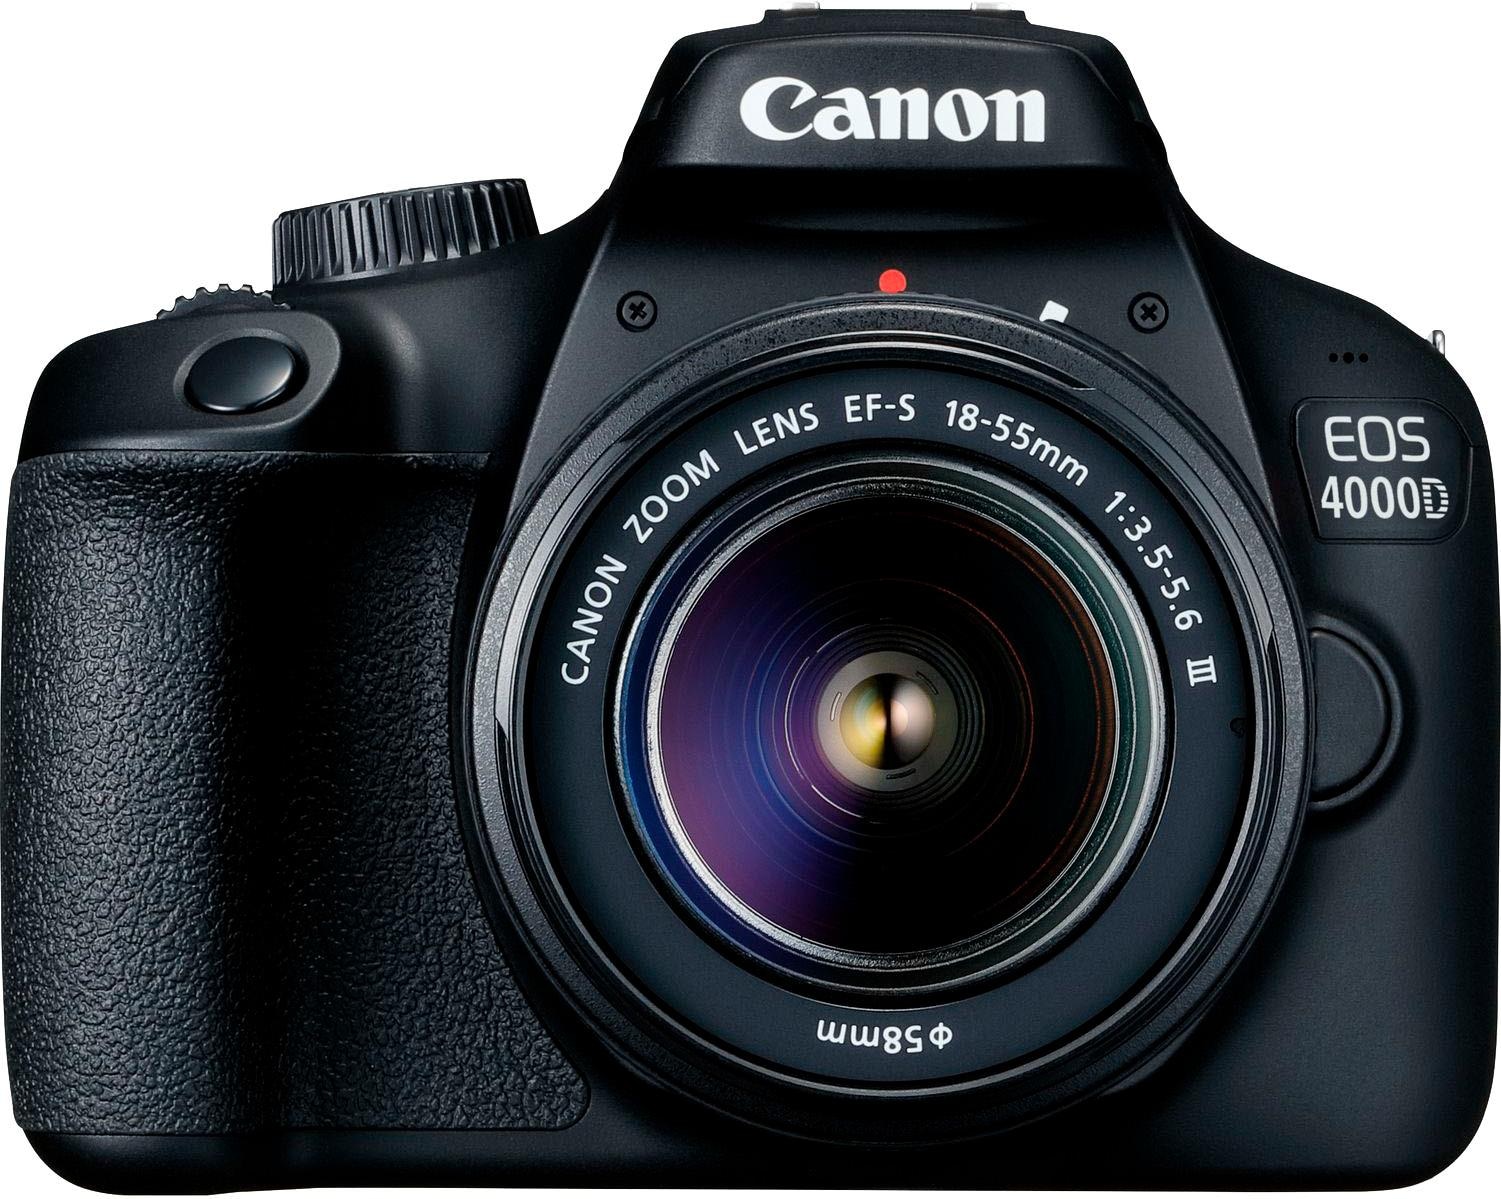 Spiegelreflexkamera III«, Canon MP, bei »EOS f/3.5-5.6 18-55mm (Wi-Fi) 4000D 18-55mm EF-S 18 WLAN III,